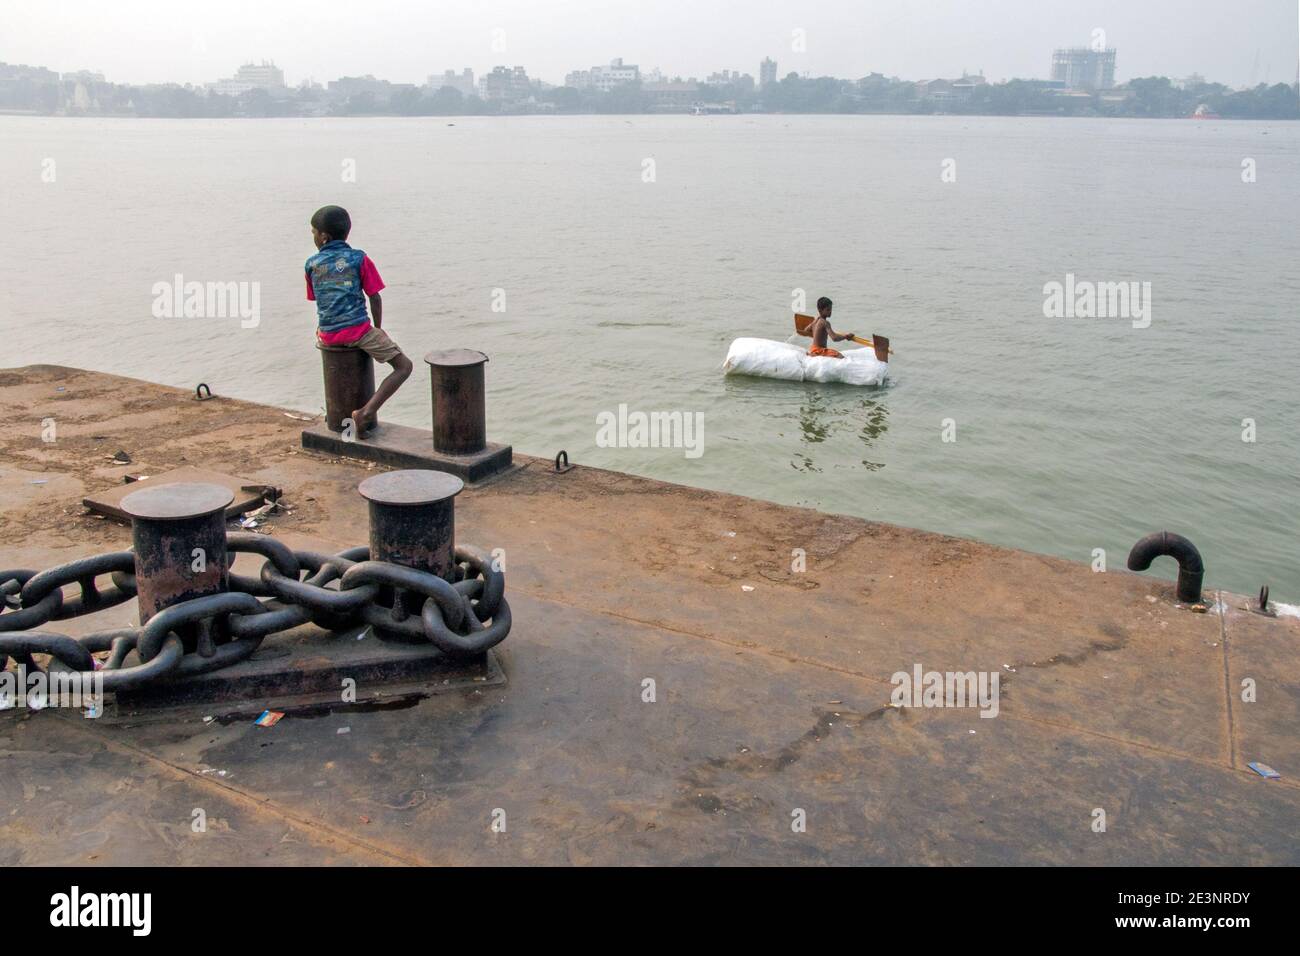 Un bambino viaggia in zattera sul fiume Gange a Kolkata. Viaggiare su questa zattera è solo una parte dell'infanzia. Foto Stock